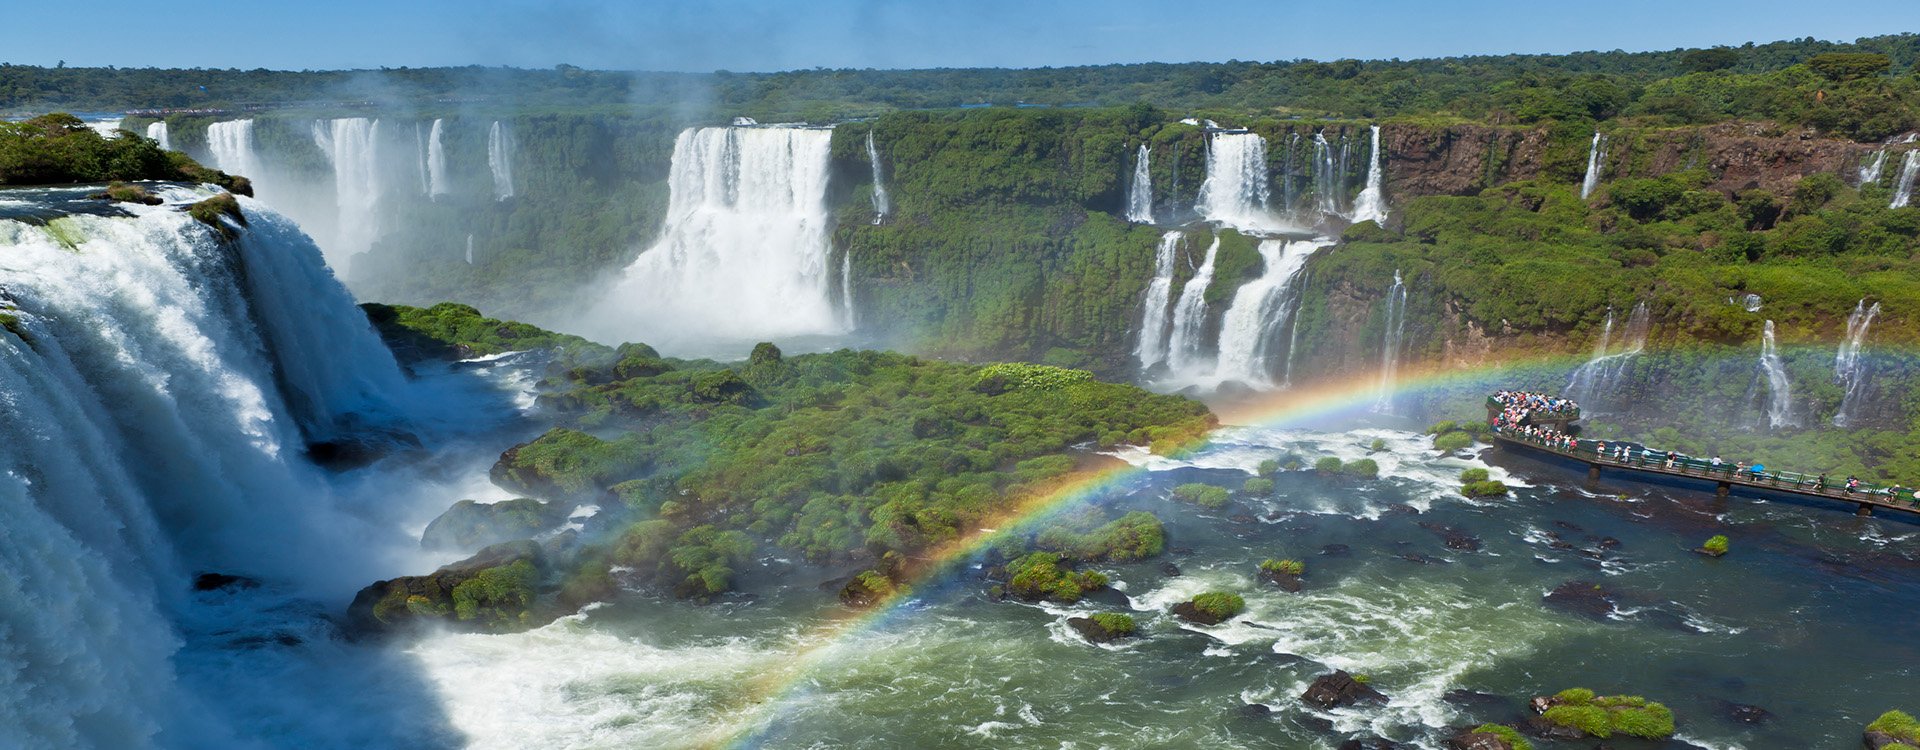 Destinations_Argentina_Iguazu Falls